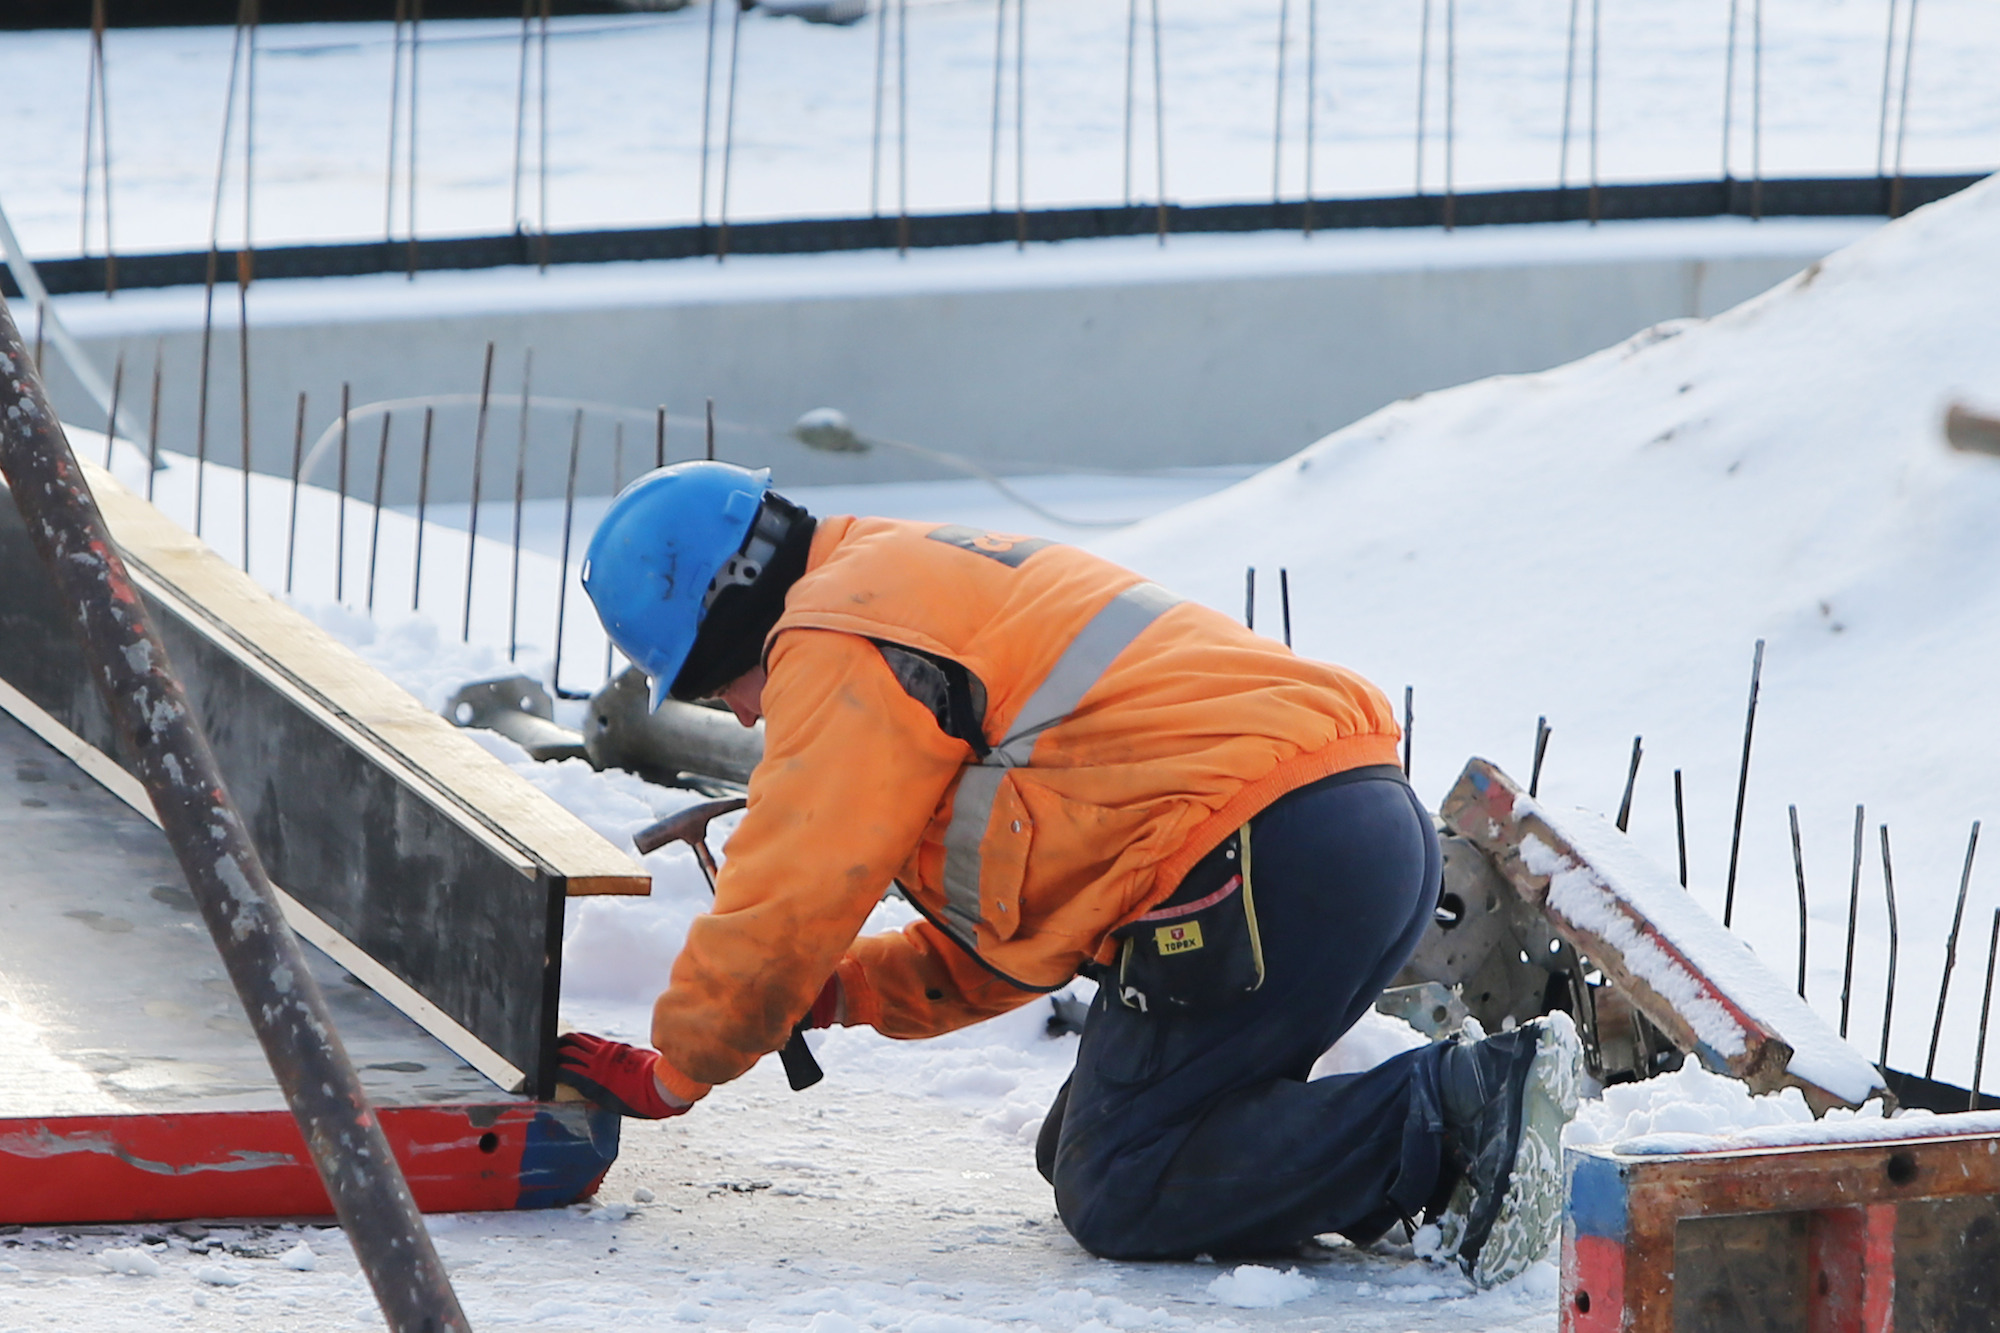 Foto: Ein Bauarbeiter arbeitet auf einer Baustelle.